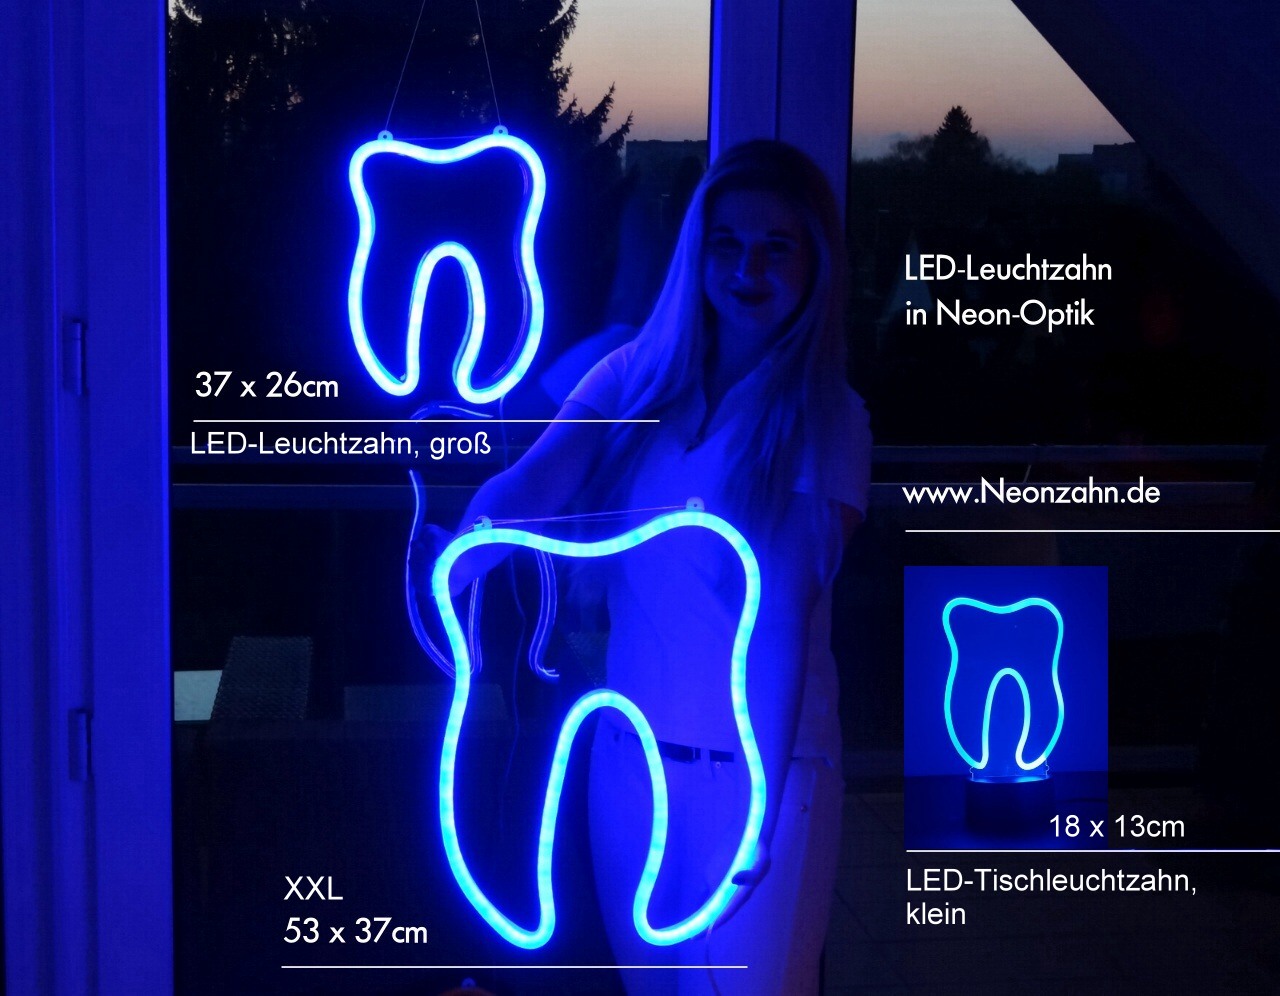 Zahn mit Klammer Leuchtreklame, LED Spangen LED Leuchtreklame, LED Schild  für Kieferorthopädie, Leuchtreklame für Kieferorthopäde, Schild für  Kieferorthopäde - .de